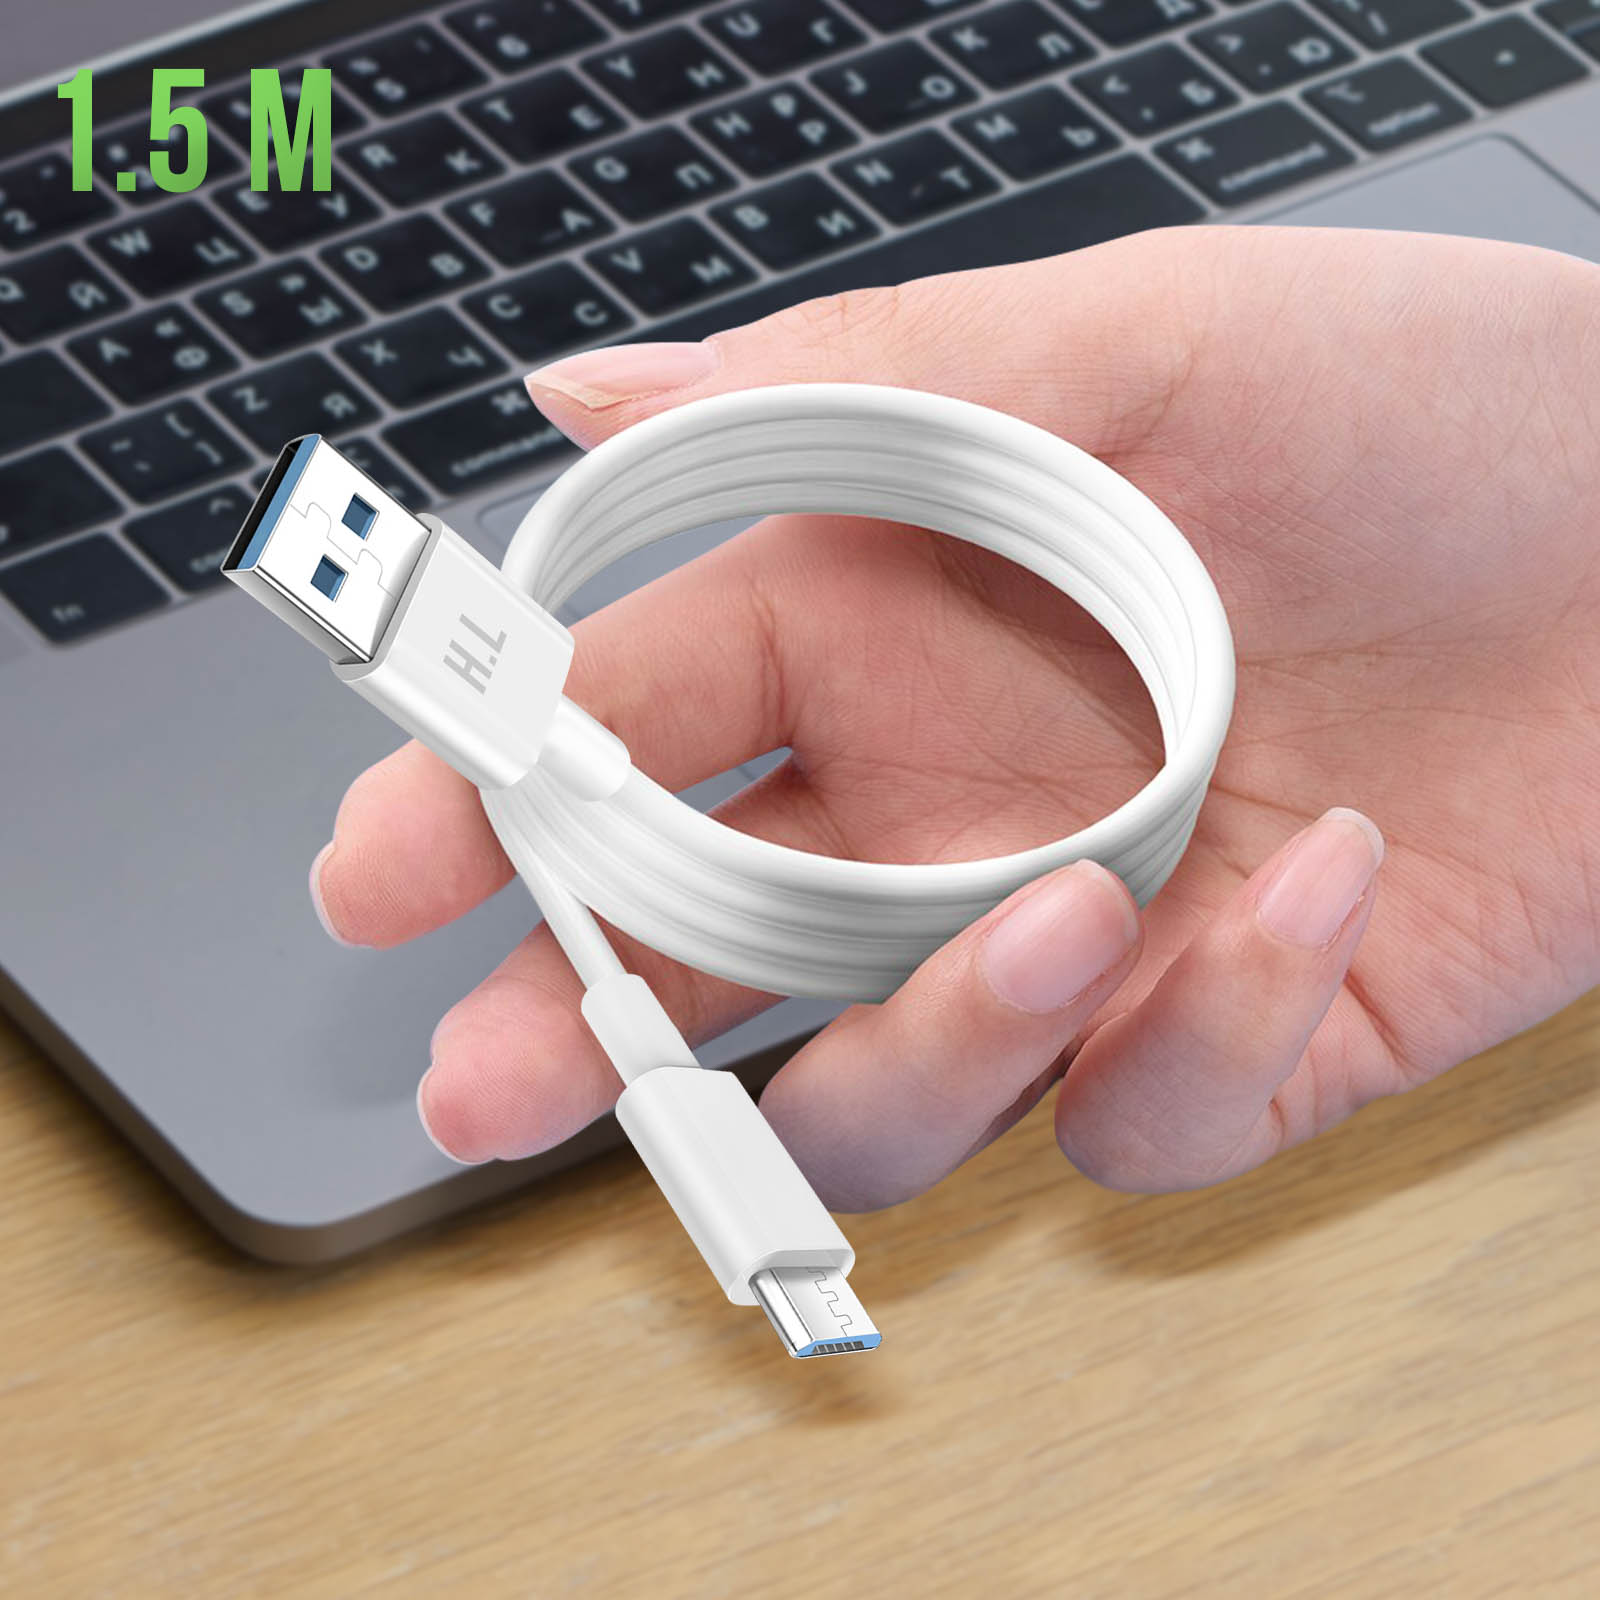 AVIZAR USB USB-Kabel langes Micro-USB Kabel 1.5m 